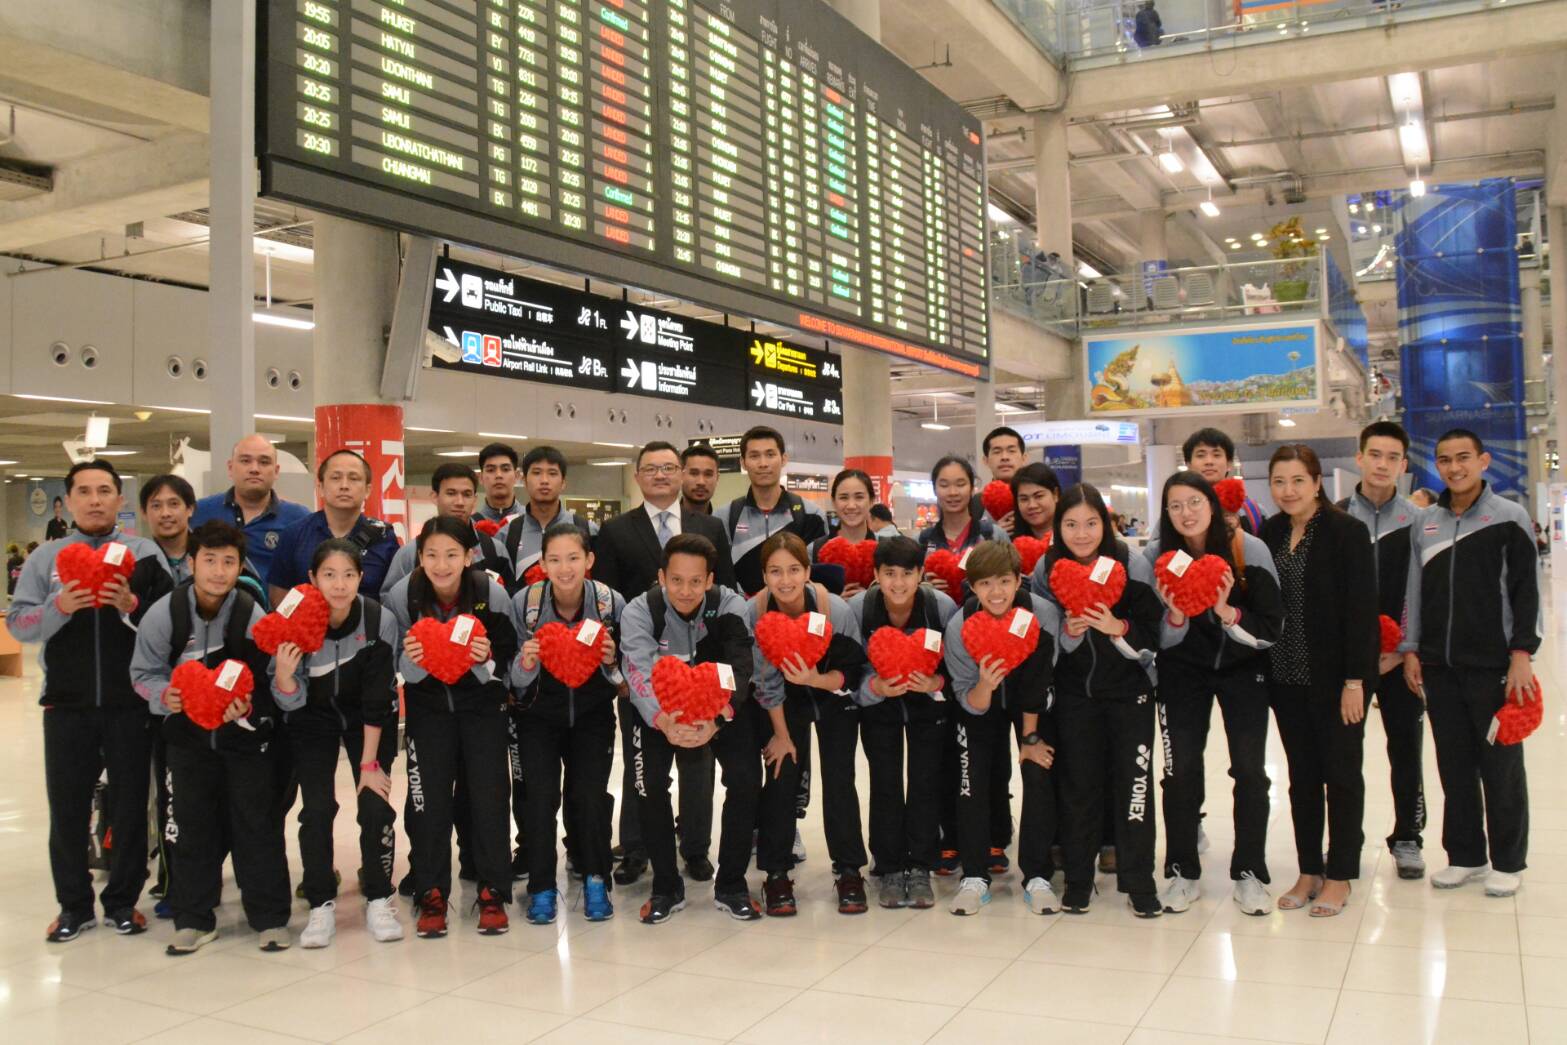 สมาคมแบดฯ ให้การต้อนรับ ทัพนักกีฬาชุดชิงแชมป์เอเชียประเภททีม เดินทางกลับถึงไทย